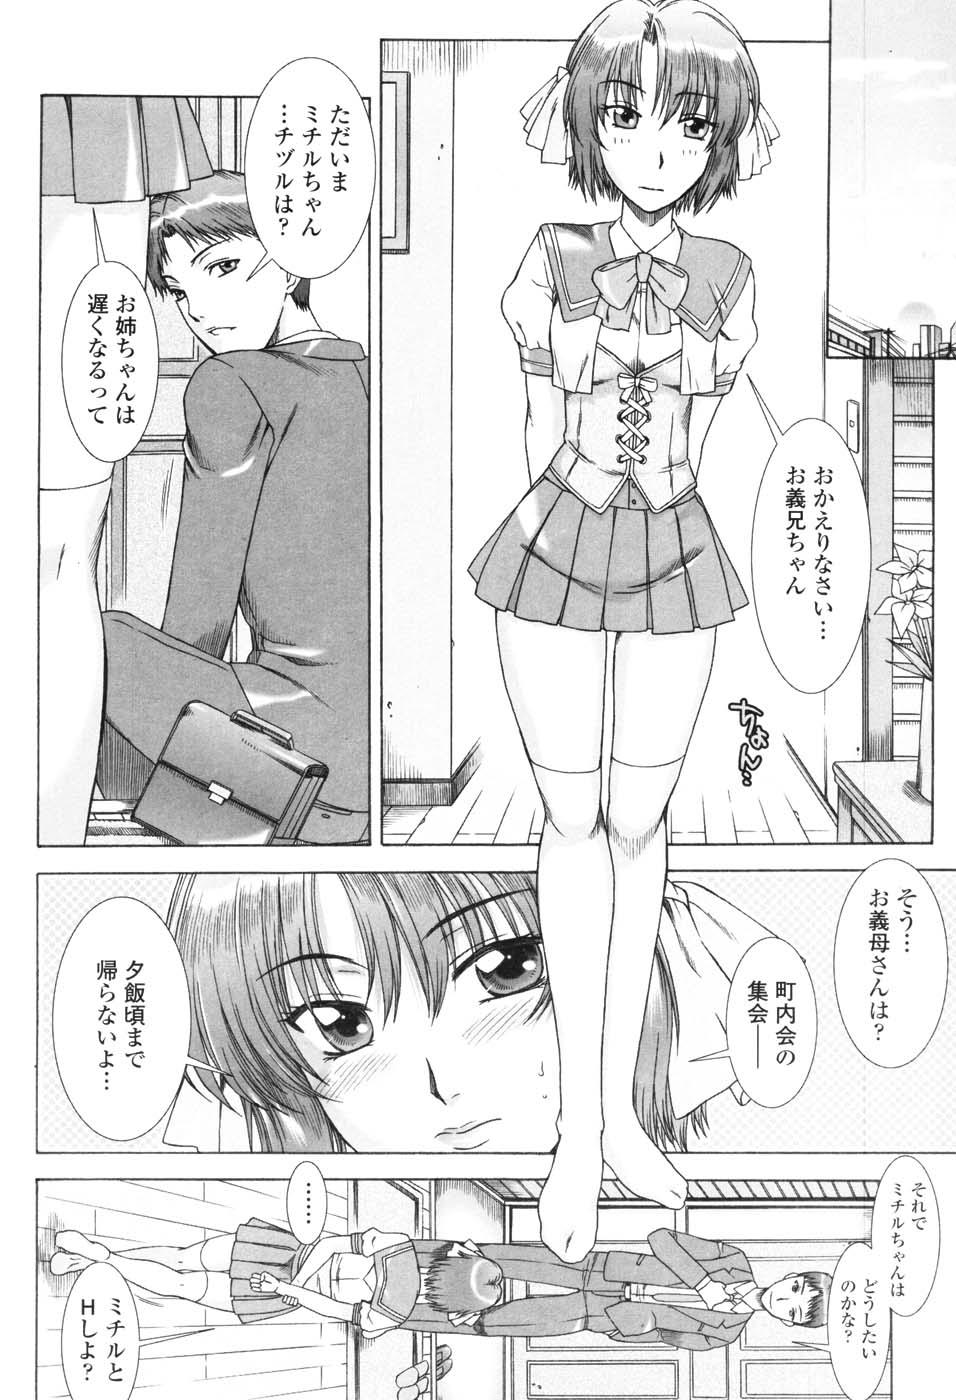 Fun Yuuwaku no Hanazono - Flower Garden of Temptation Free Petite Porn - Page 11